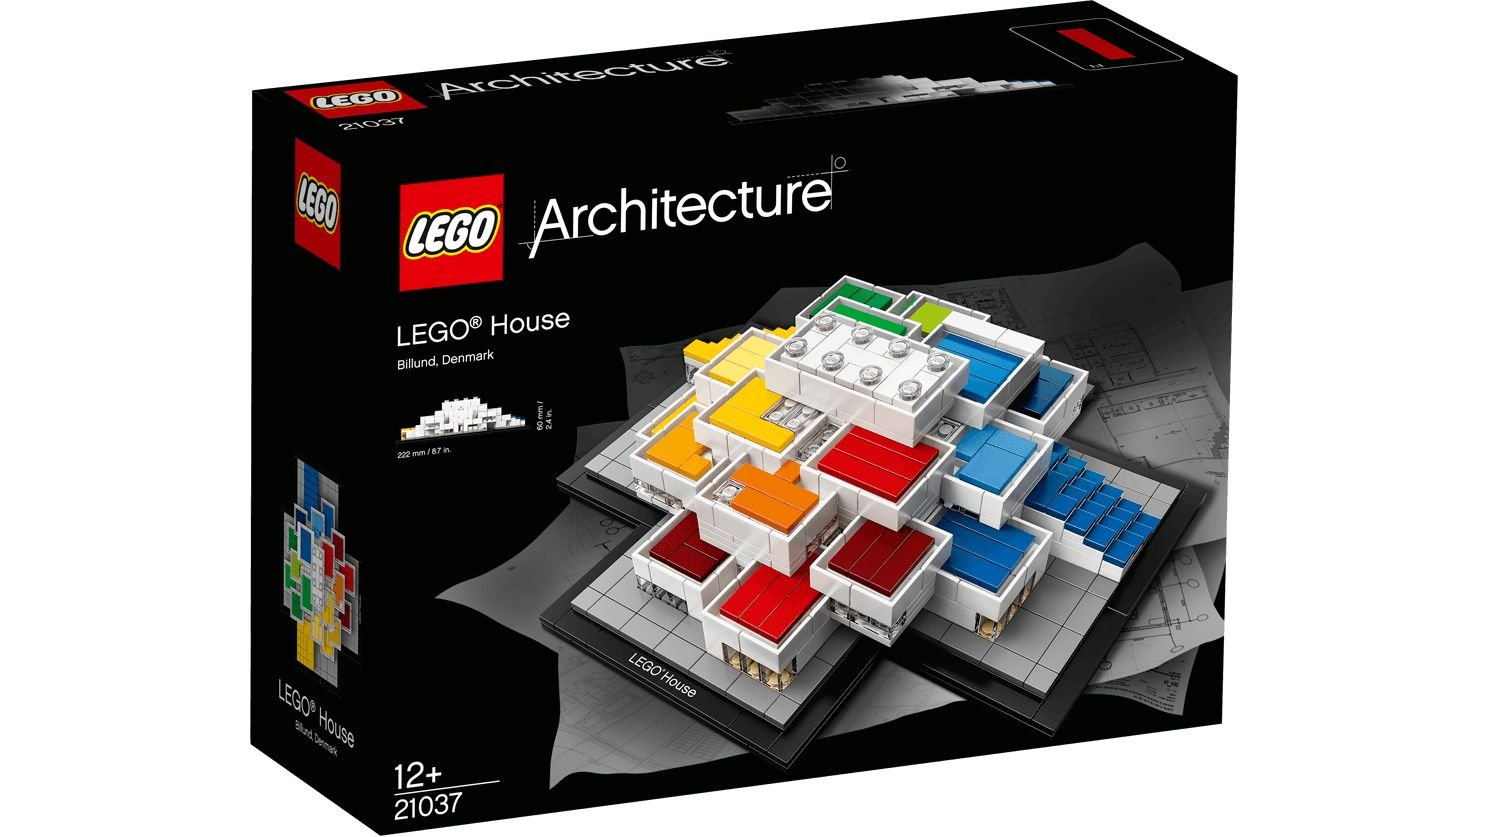 LEGO Architecture 21037 LEGO® House LEGO_21037_LEGO-HOUSE_Box.jpg